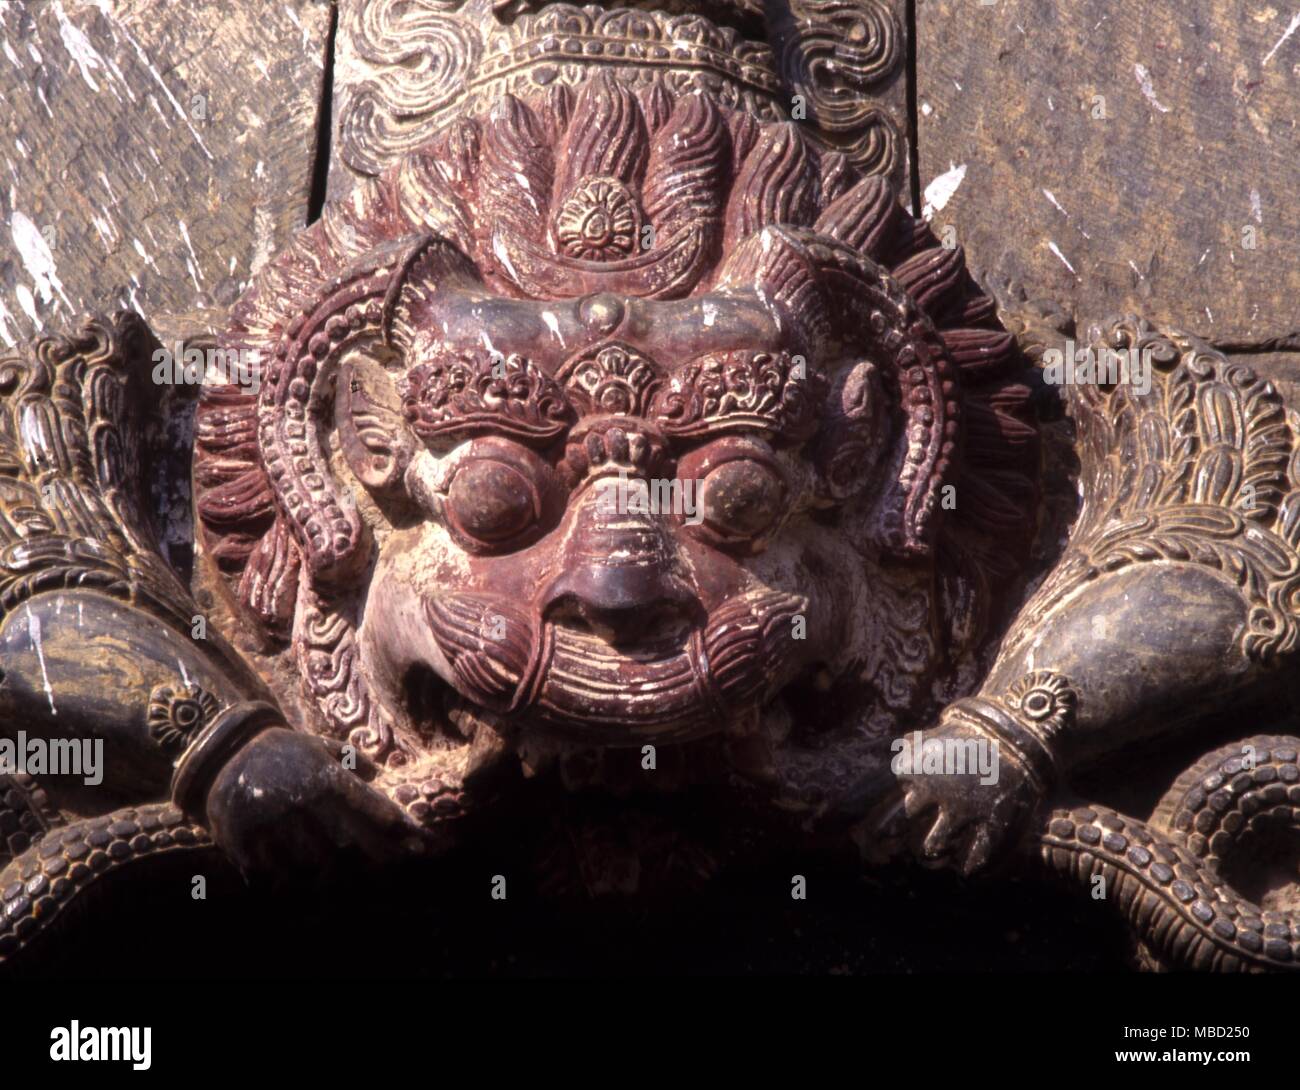 La mythologie tibétaine. La tête de Kirtimukha (face de la gloire) qui se trouve au-dessus de l'entrée des temples Shaivite, surtout à Katmandou Banque D'Images